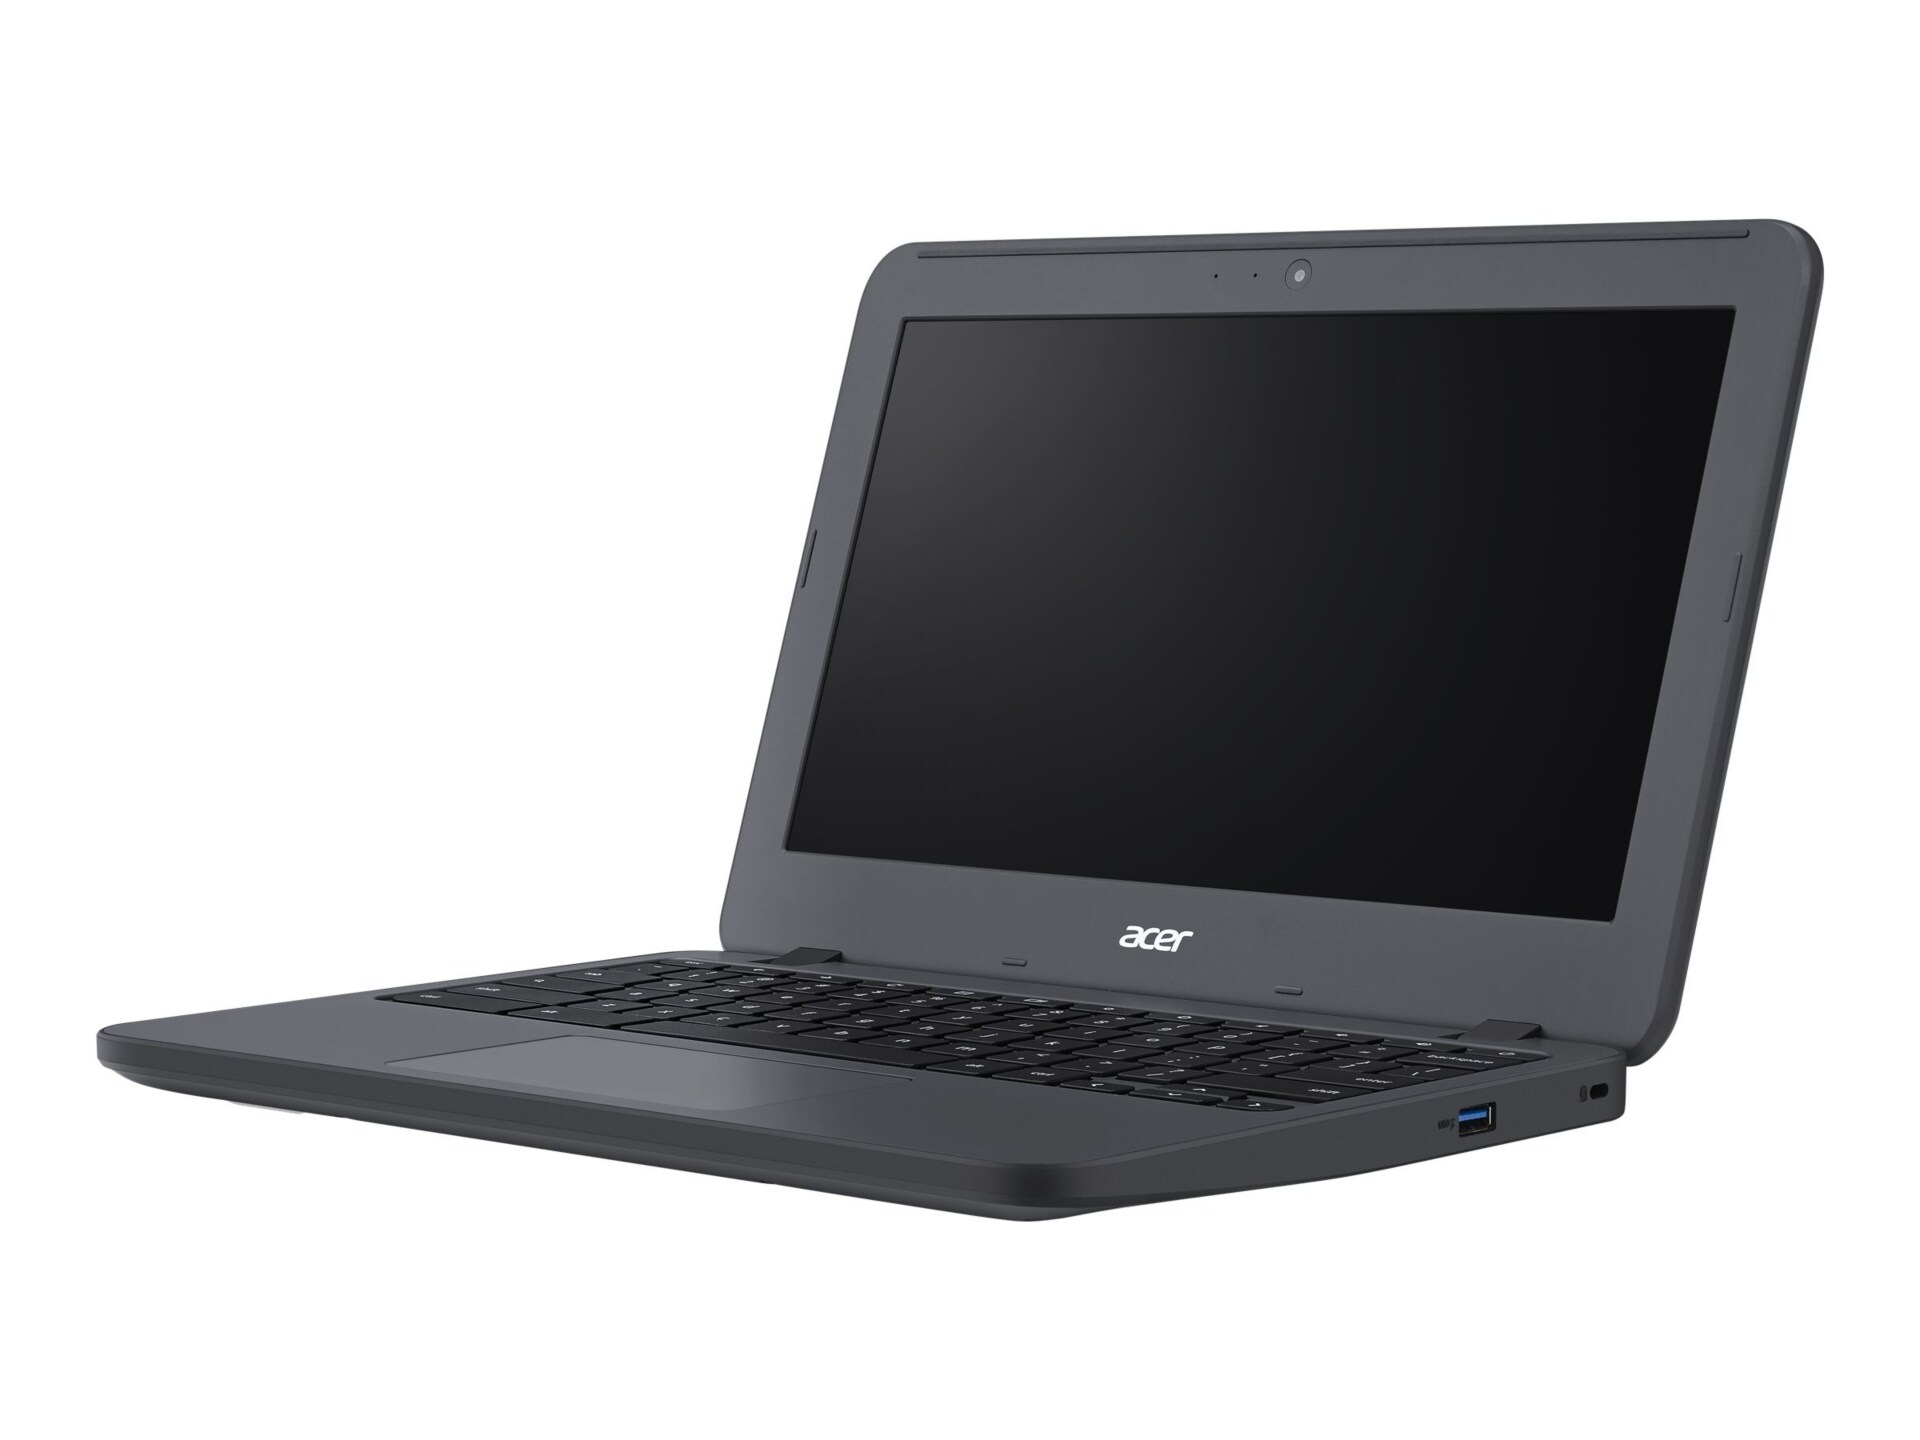 Acer Chromebook 11 N7 C731-C8VE - 11.6" - Celeron N3060 - 4 GB RAM - 16 GB SSD - US